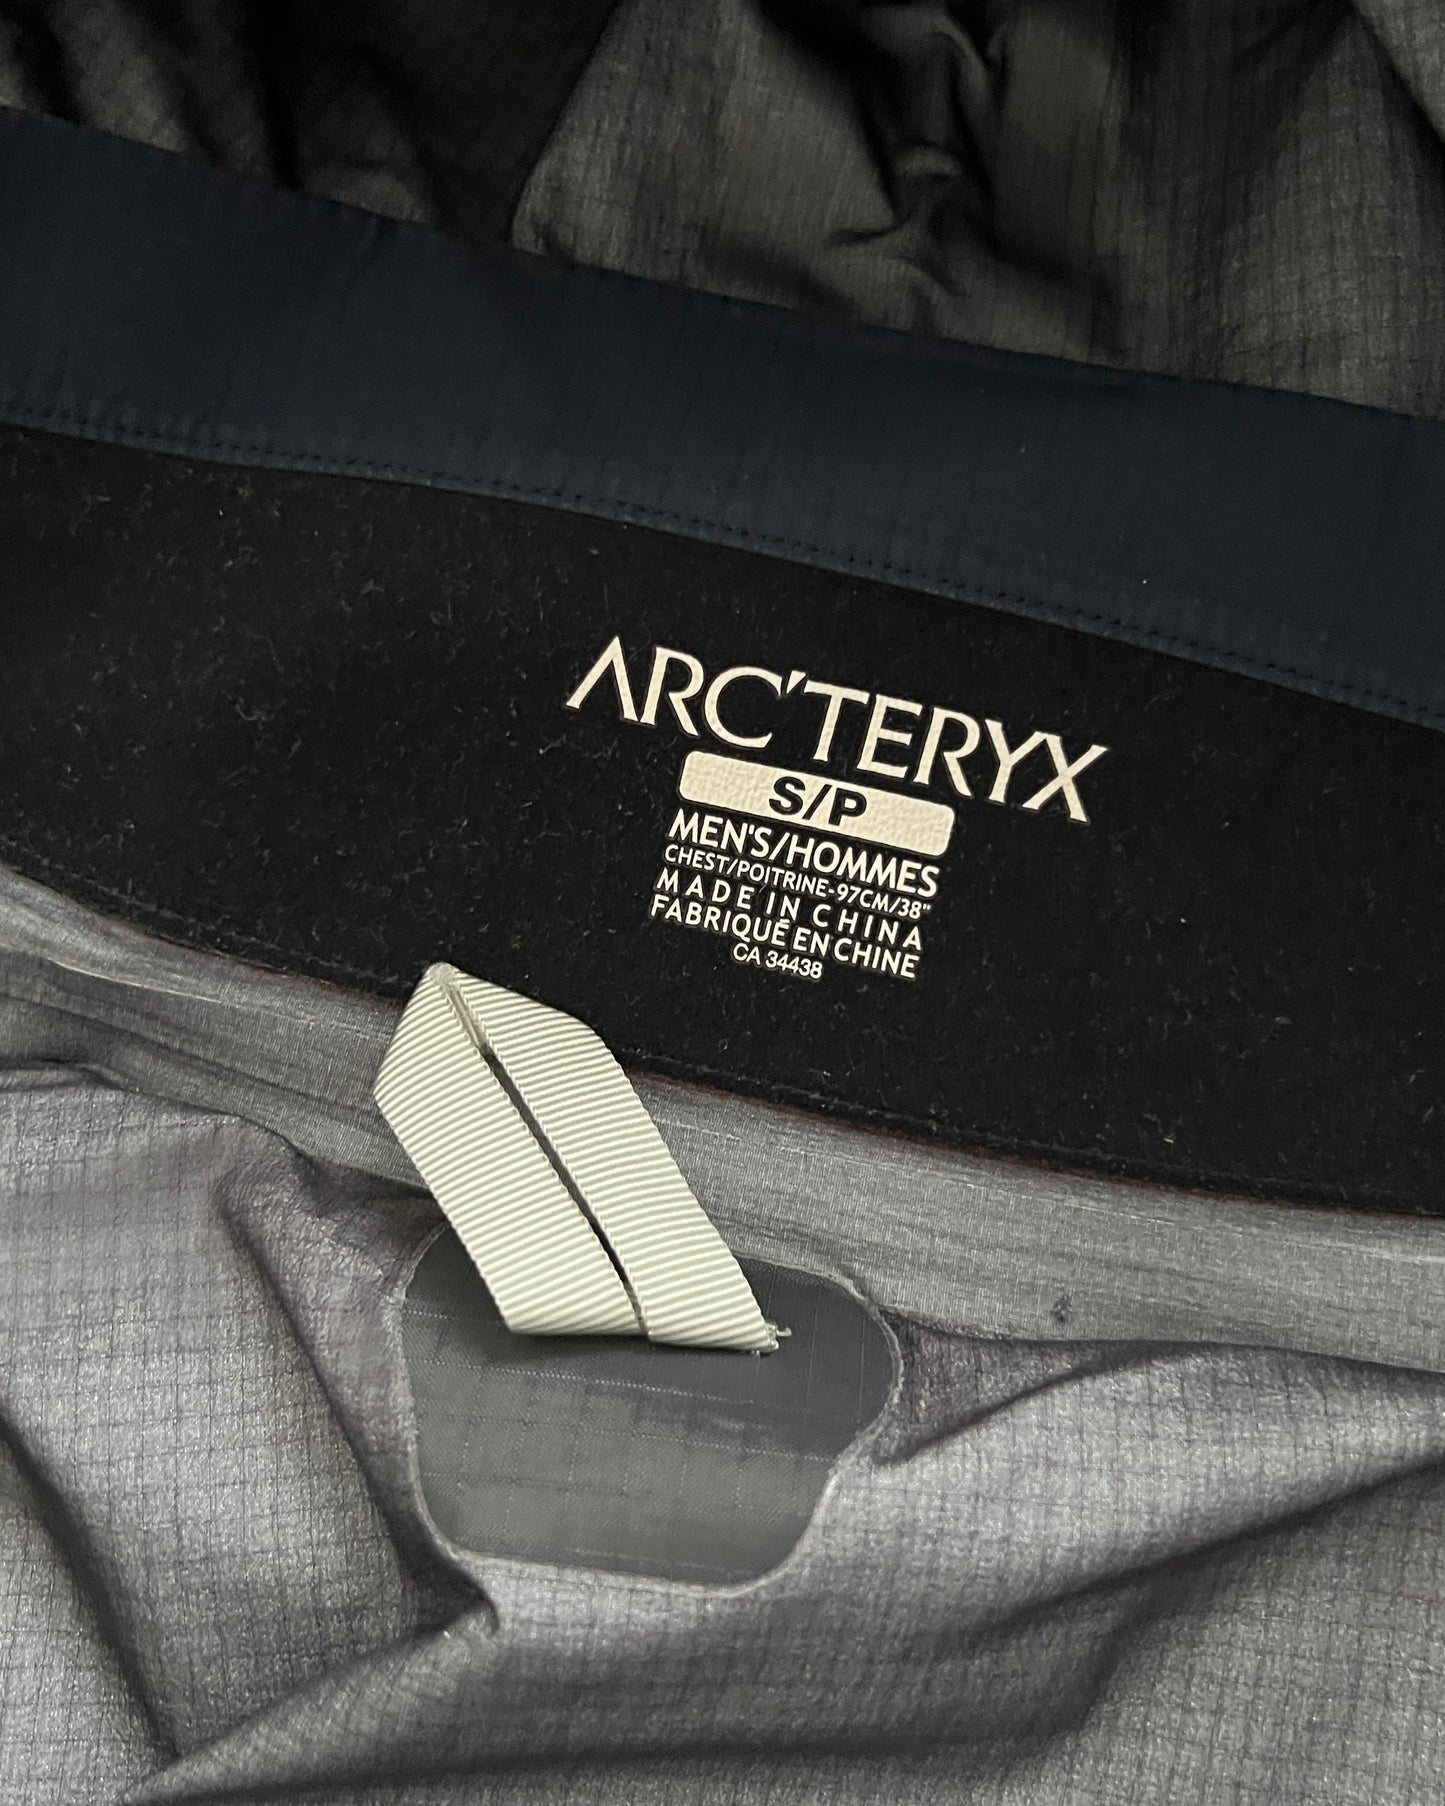 Arcteryx Beta AR Gore-Tex Pro Jacket - Size S